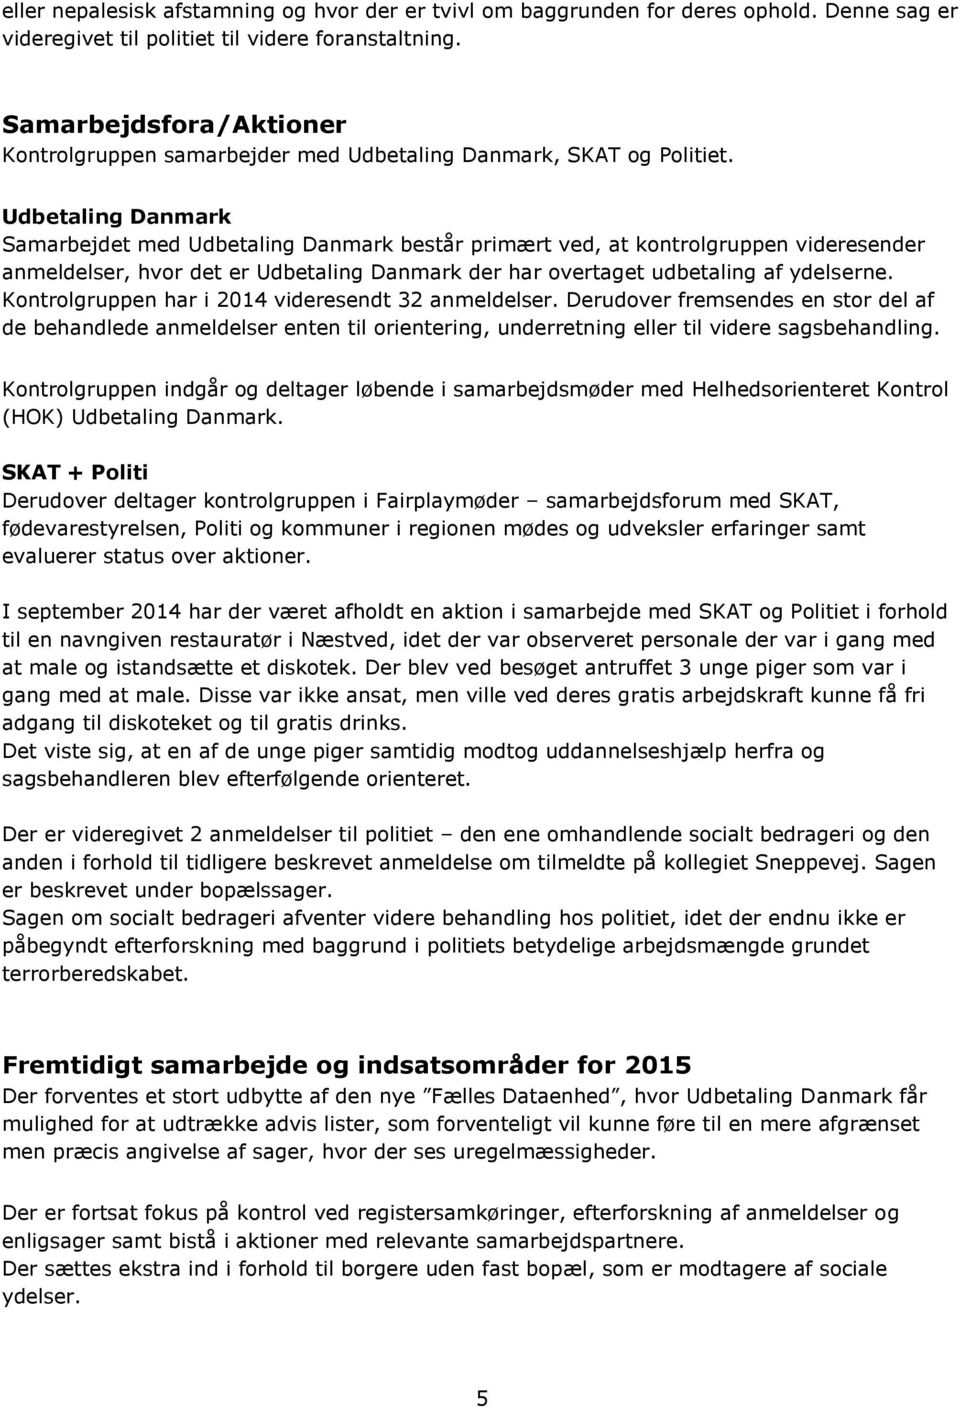 Udbetaling Danmark Samarbejdet med Udbetaling Danmark består primært ved, at kontrolgruppen videresender anmeldelser, hvor det er Udbetaling Danmark der har overtaget udbetaling af ydelserne.